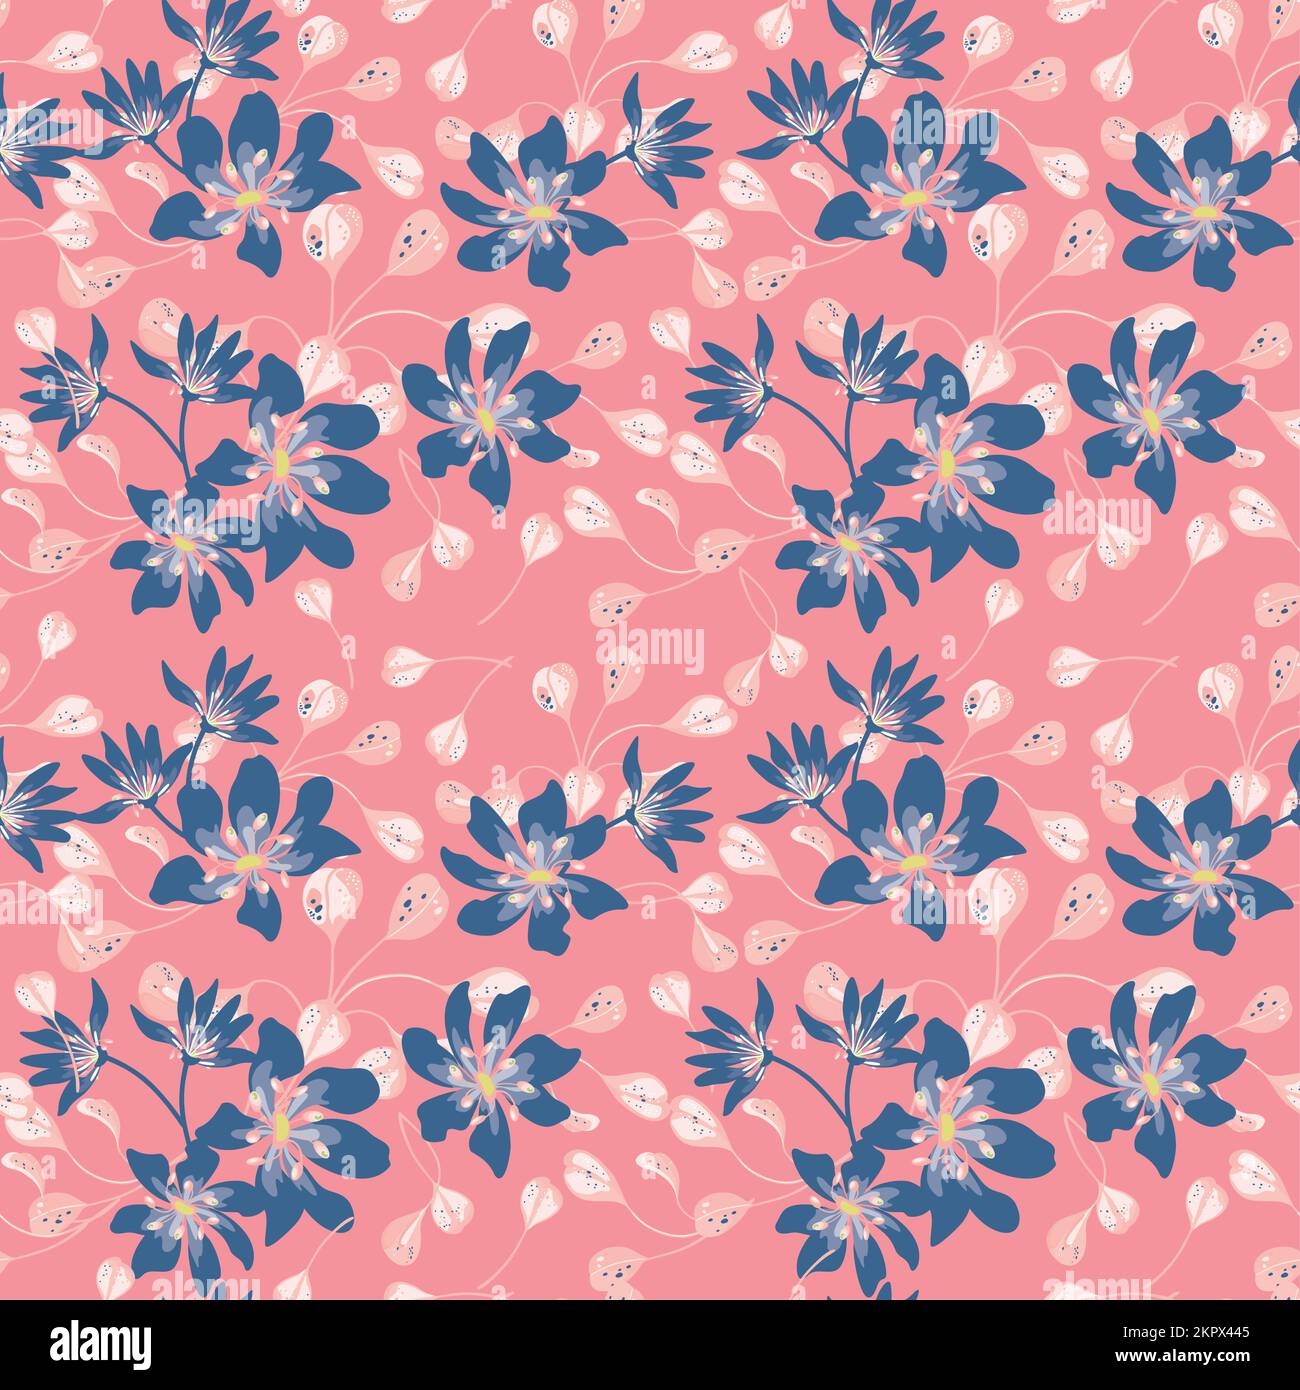 Modernes, nahtloses Muster mit großem Blumenvektor. Digital gezeichnete Darstellung. Kann als Textilstoff oder Tapete, Karten, Einladungsdekoration verwendet werden Stock Vektor